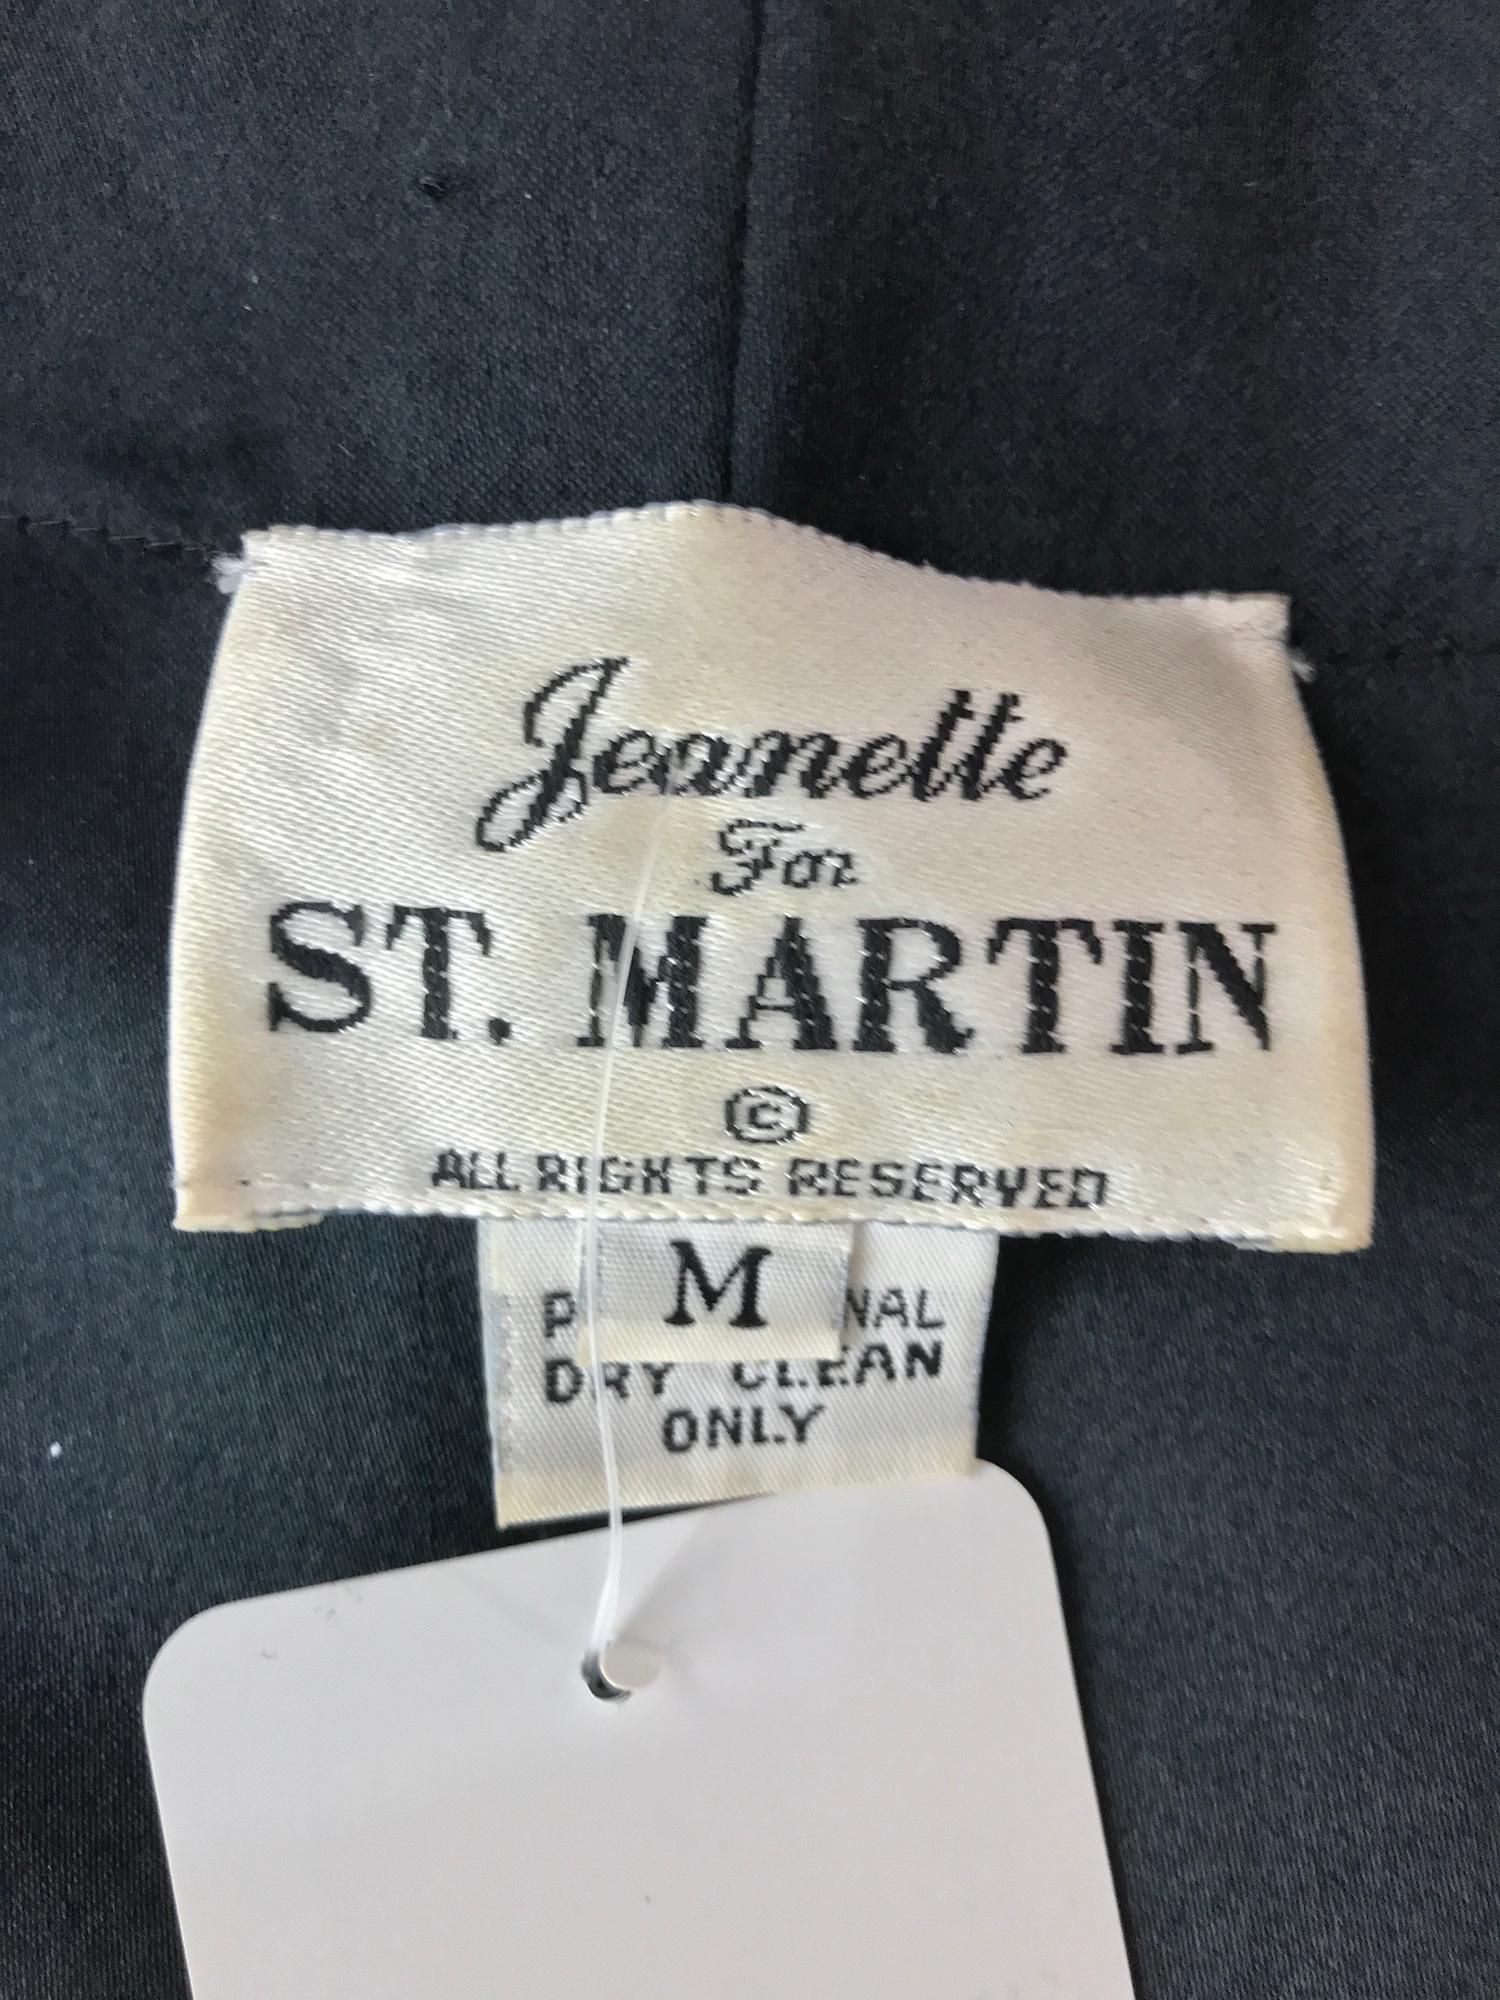 Jeanette St. Martin Beaded Art Sequin Jacket 1980s 9